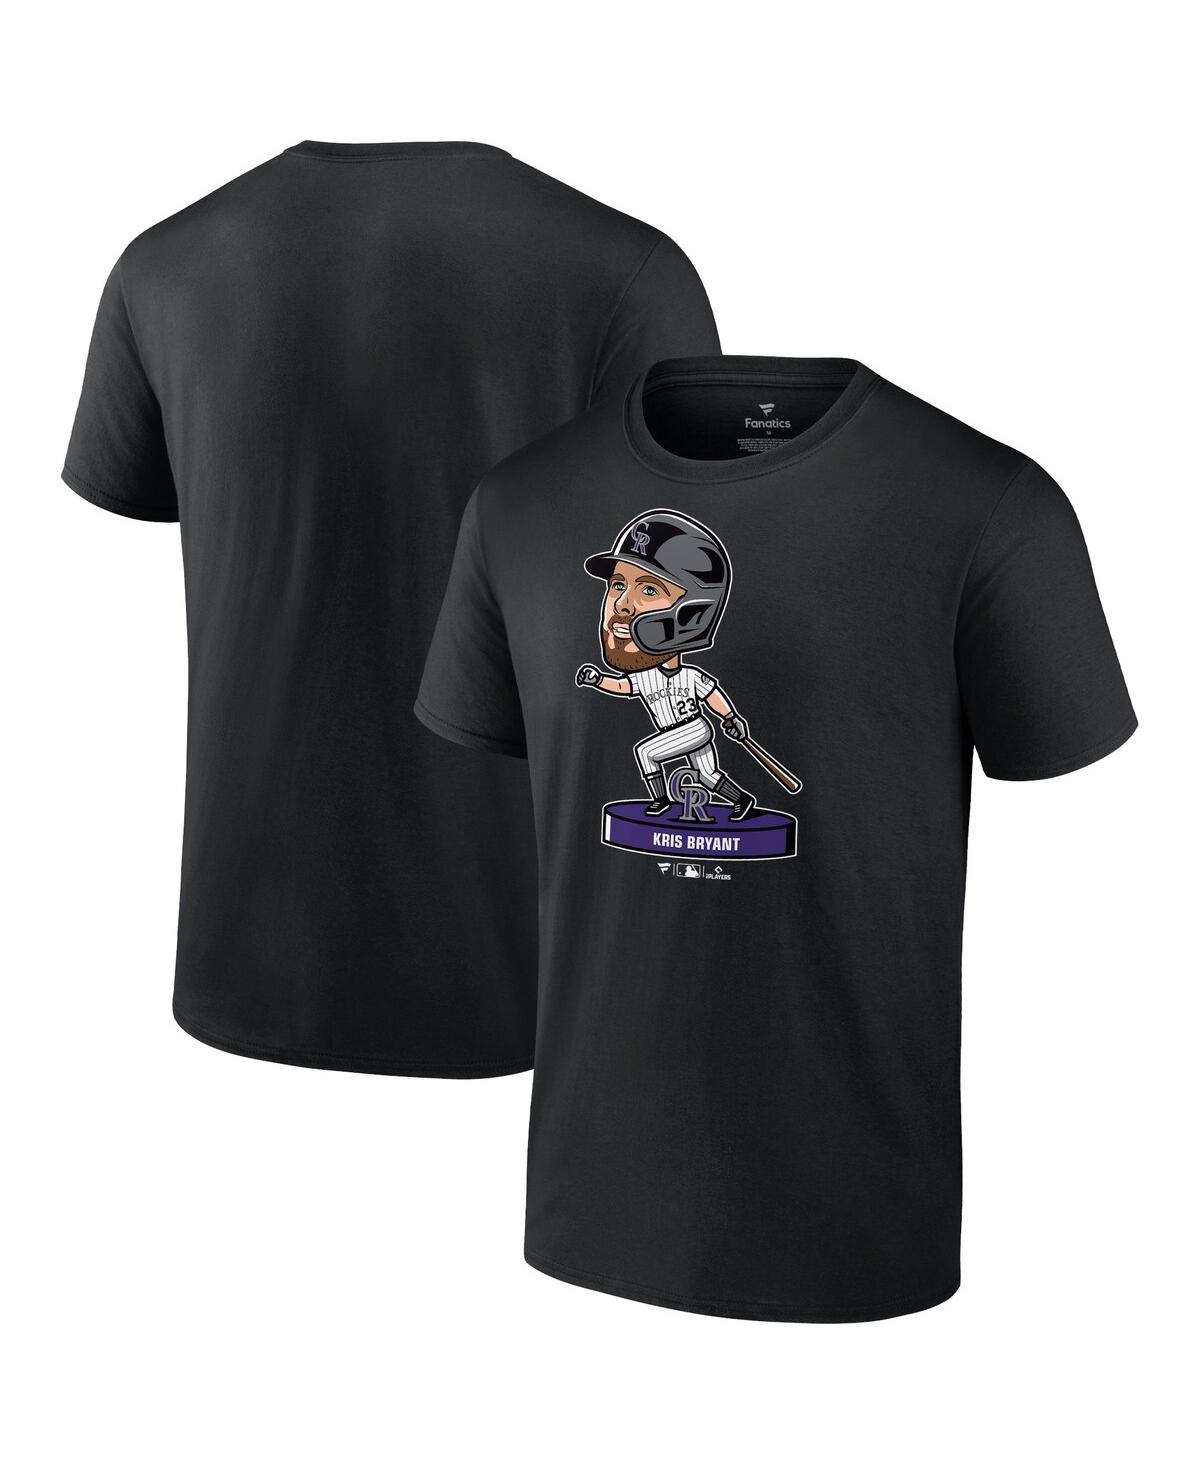 Men's Nike Kris Bryant Black Colorado Rockies Bobblehead T-Shirt